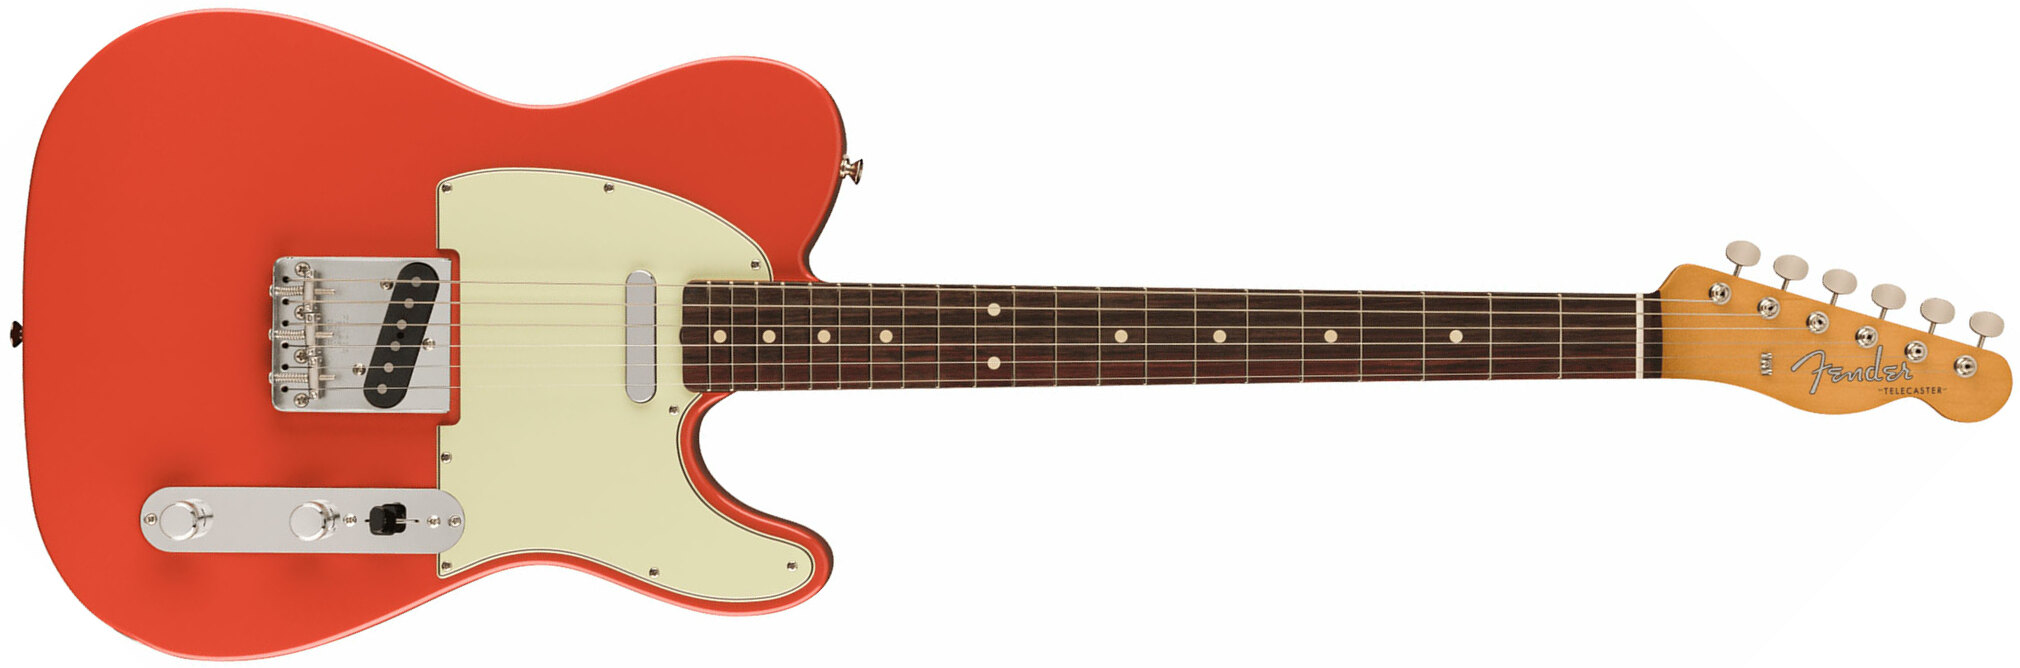 Fender Tele 60s Vintera 2 Mex 2s Ht Rw - Fiesta Red - E-Gitarre in Teleform - Main picture